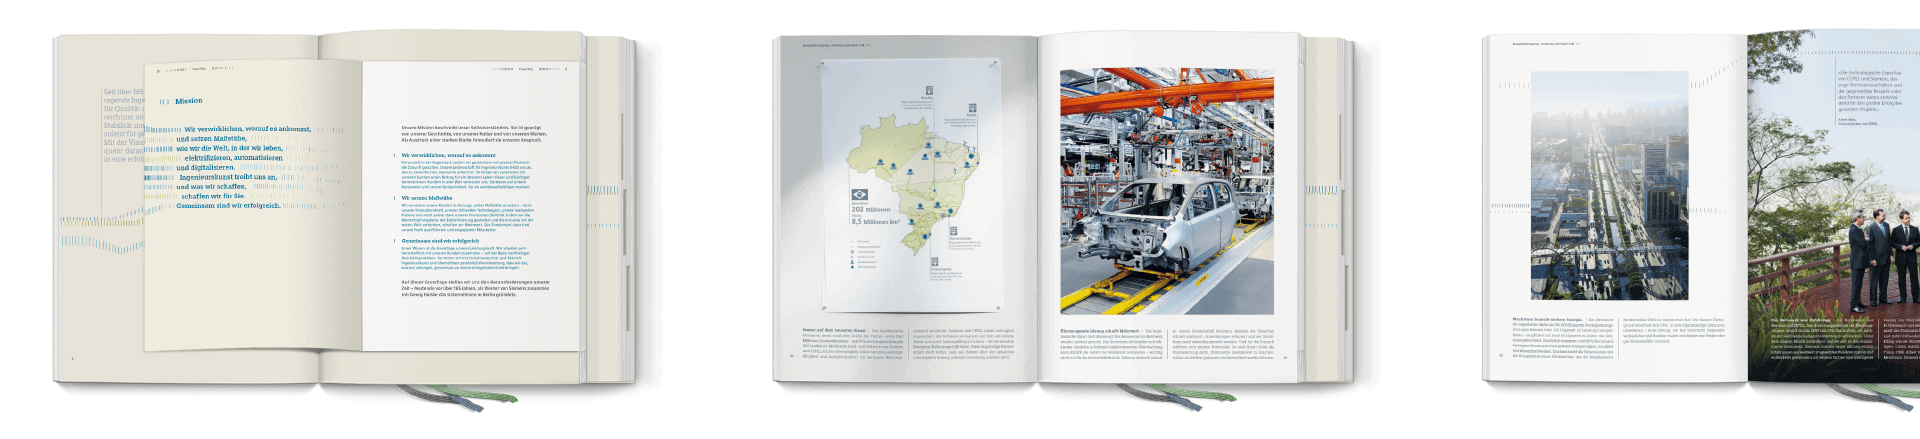 Doppelseiten aus dem Siemens Jahresbericht 2014 mit Fotografie, Typografie und Karten